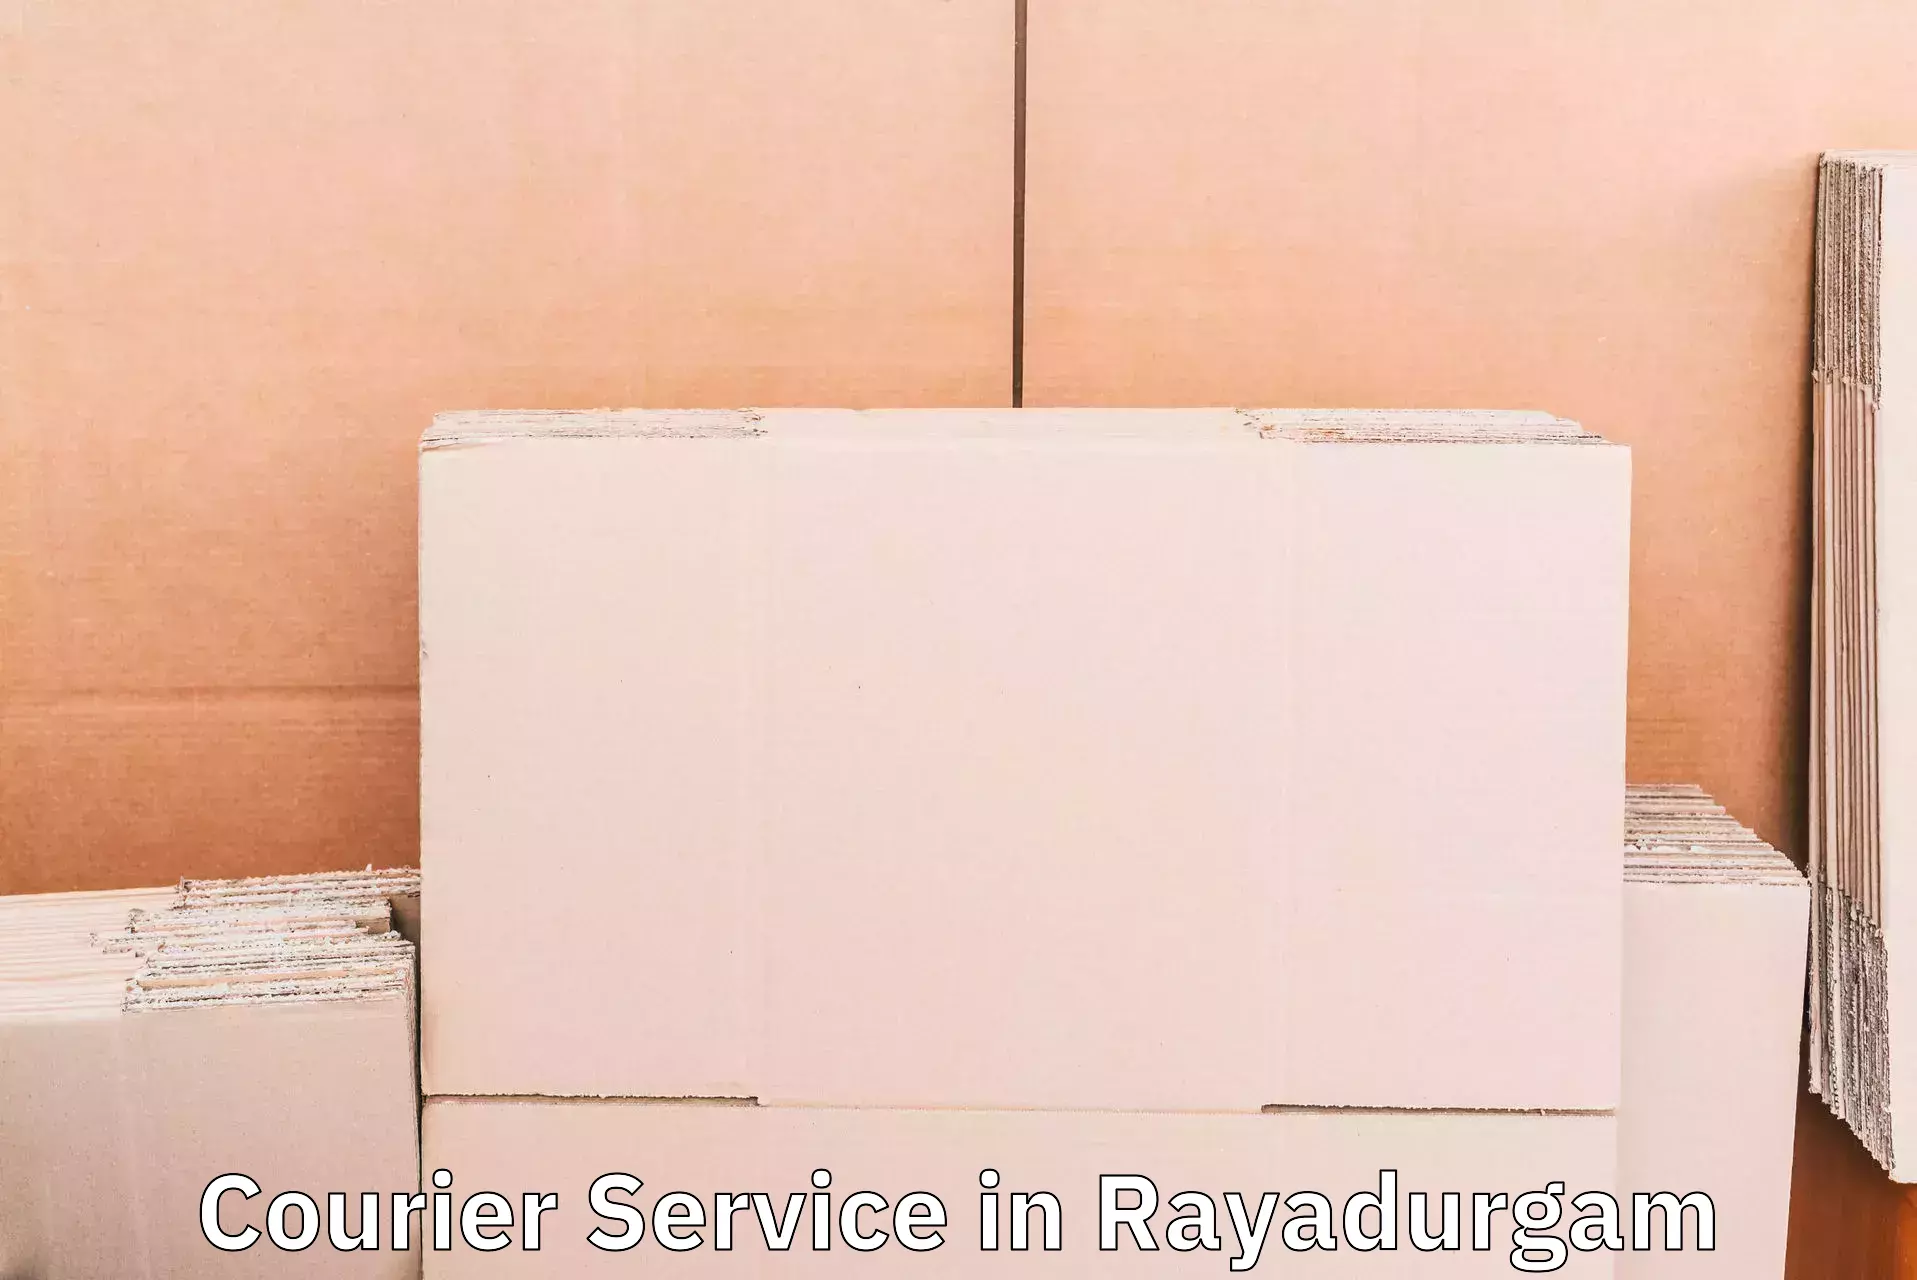 Smart shipping technology in Rayadurgam